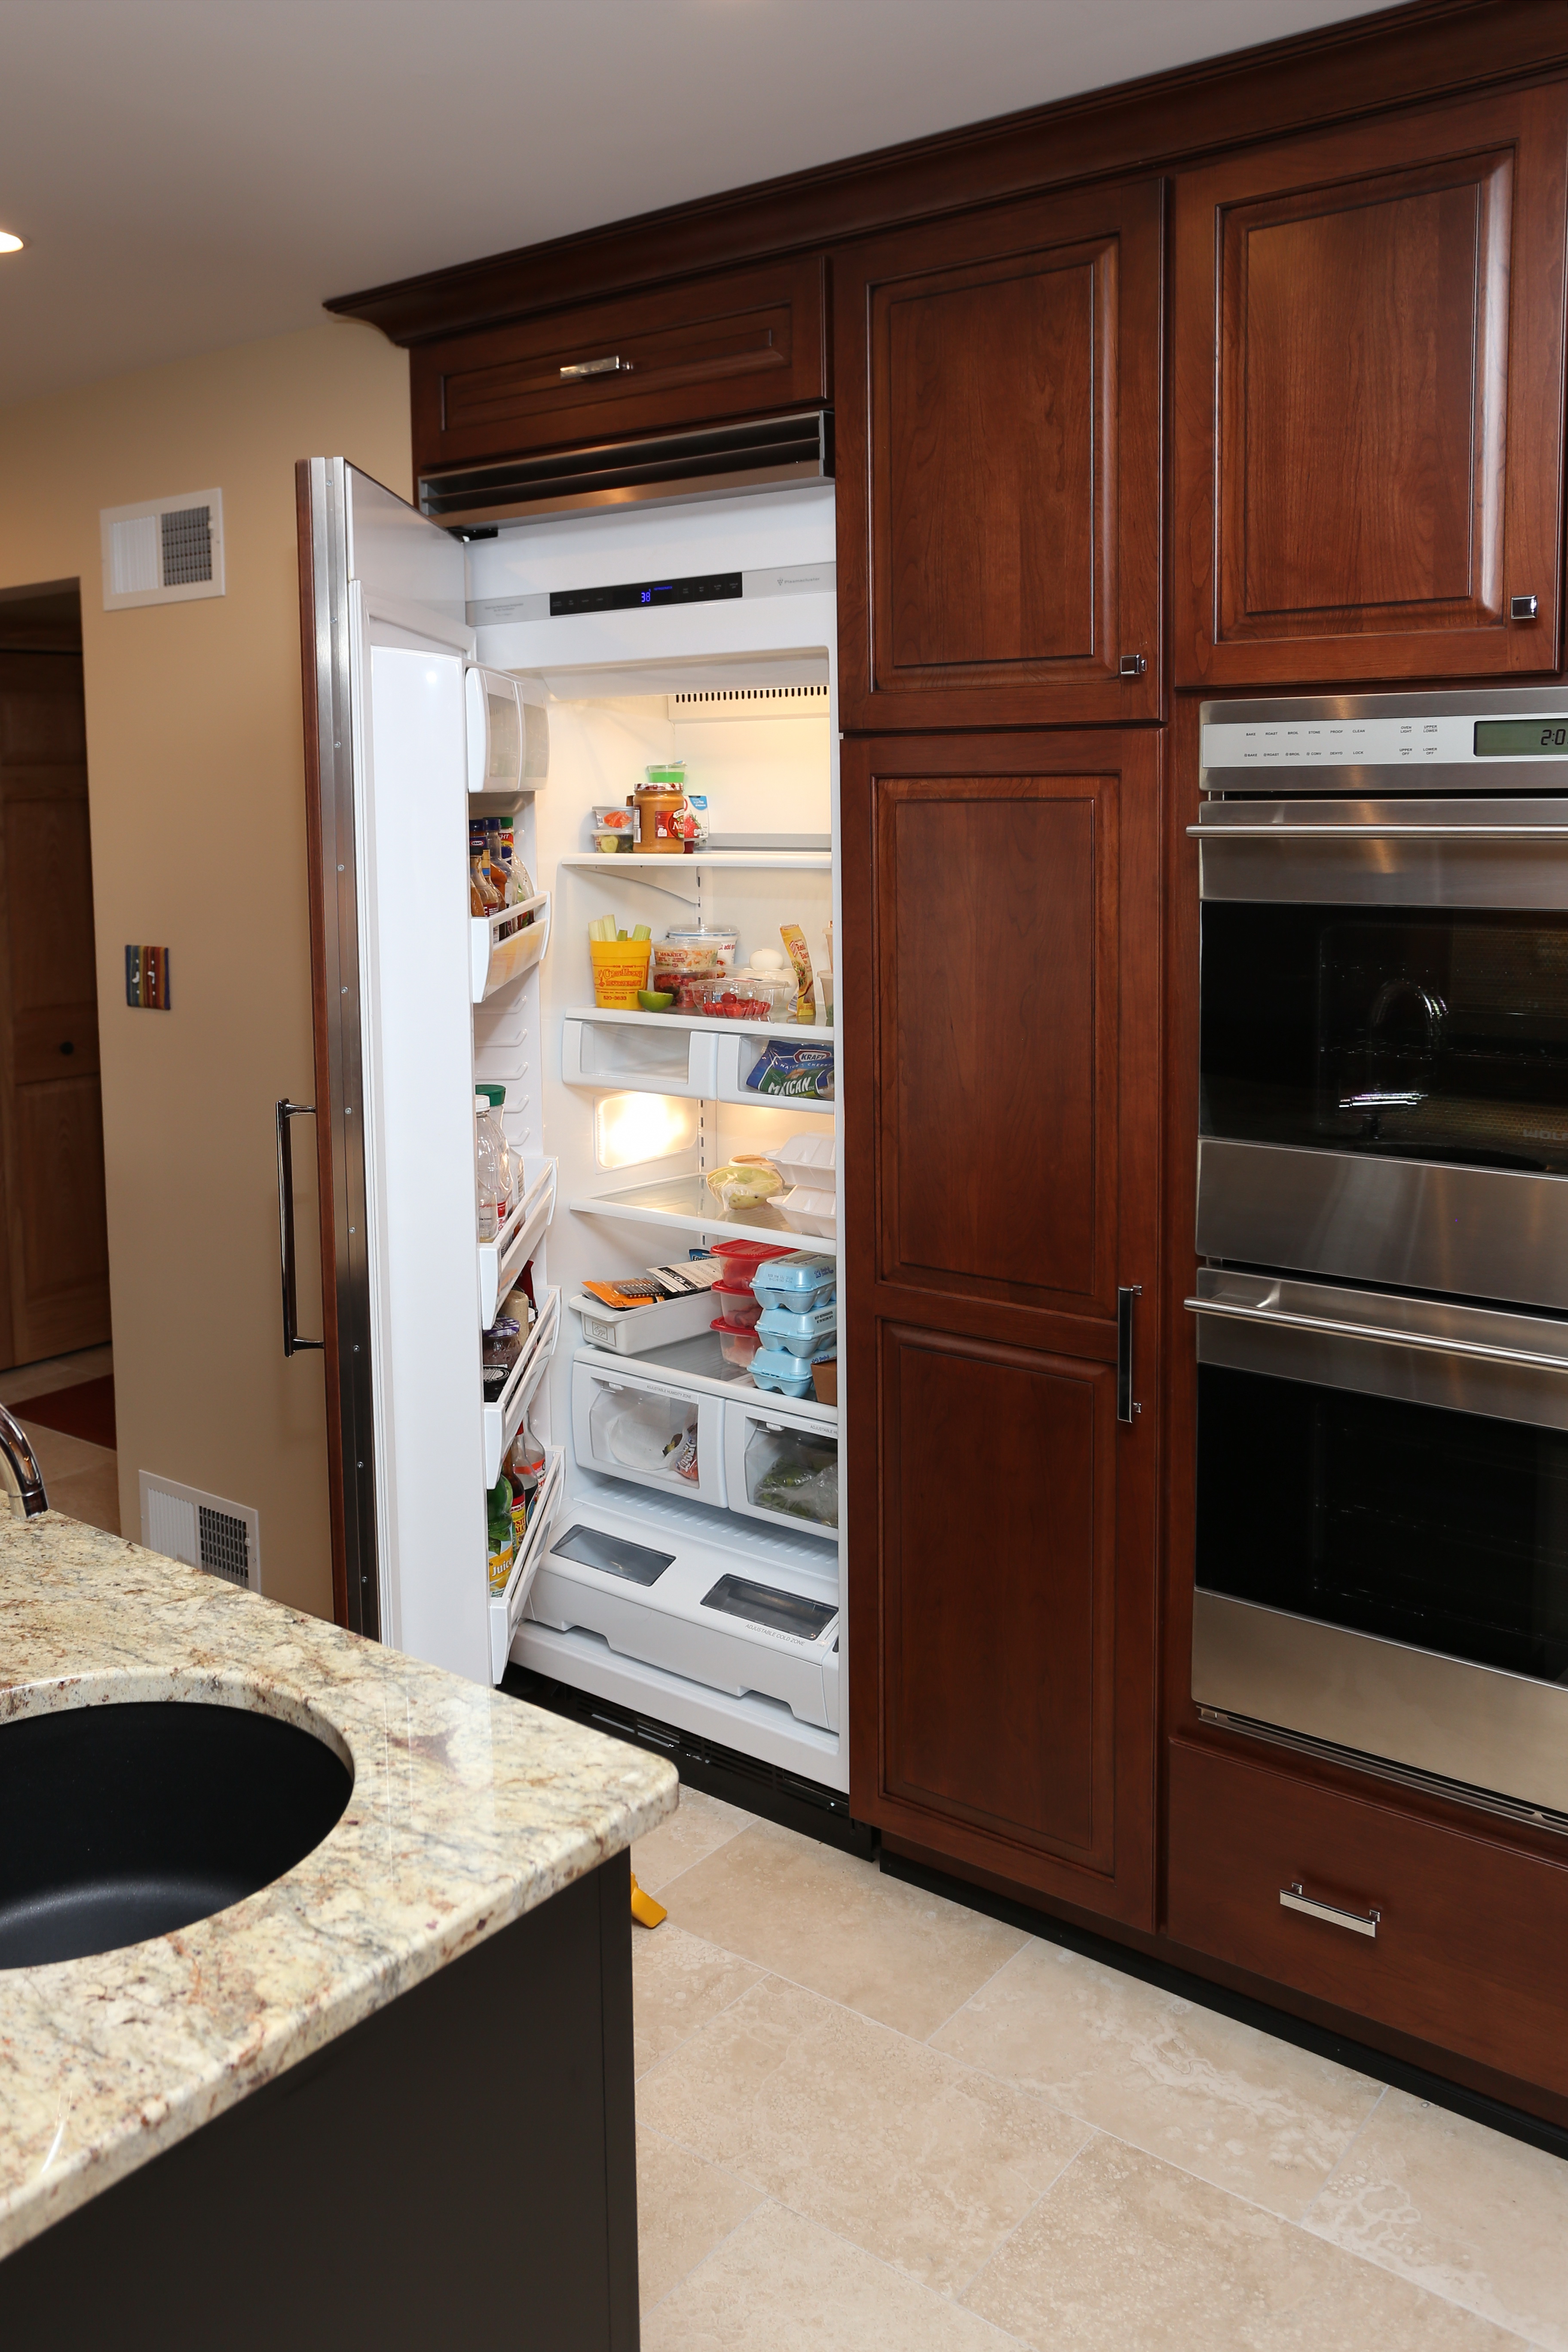  kitchen cabinet fridge